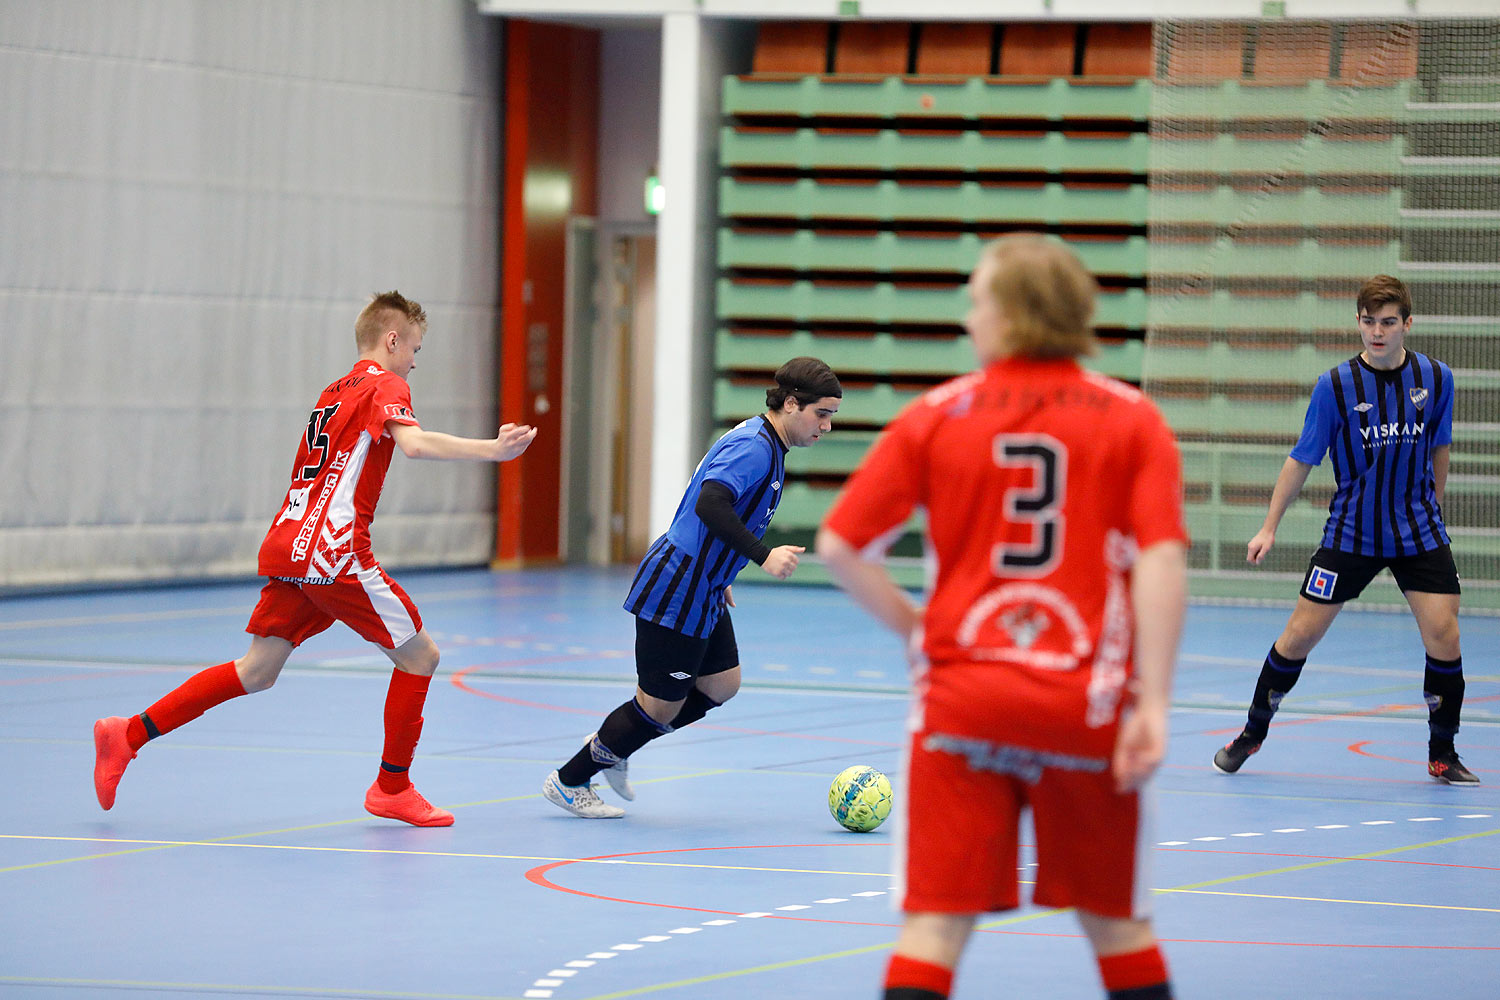 Skövde Futsalcup Herrjuniorer Ulricehamns IFK-Töreboda IK,herr,Arena Skövde,Skövde,Sverige,Skövde Futsalcup 2016,Futsal,2016,141970